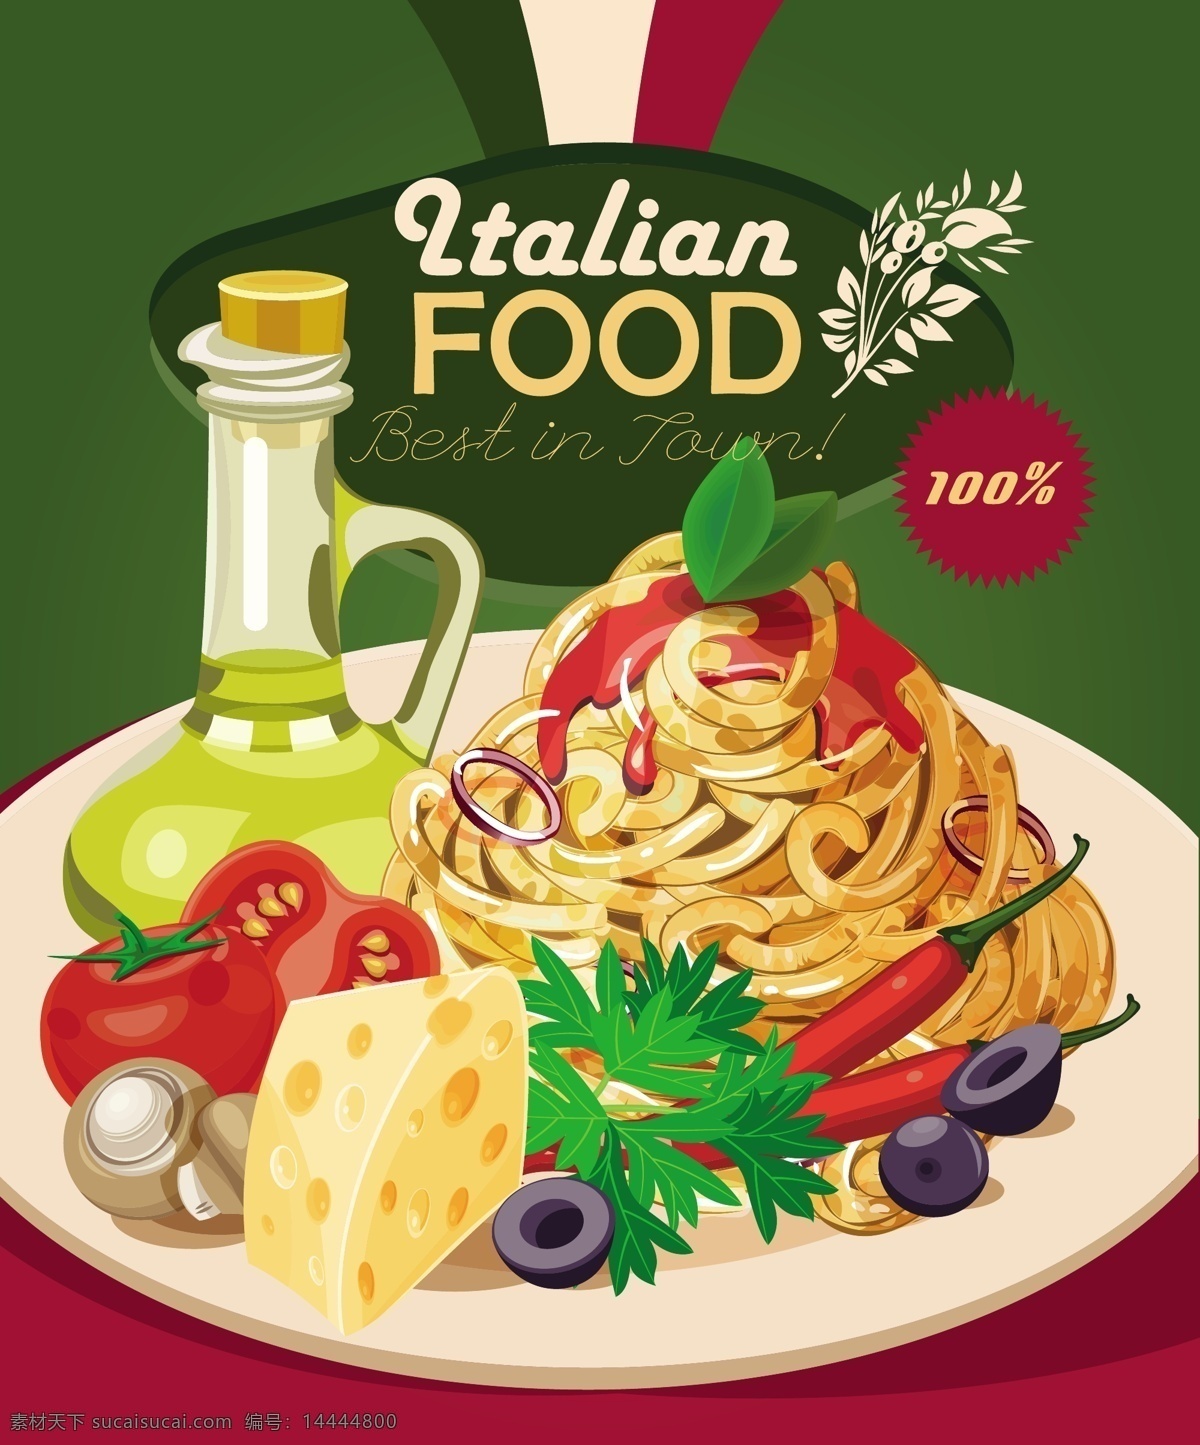 意大利 食物 矢量 创意 矢量素材 设计素材 背景素材 意大利面